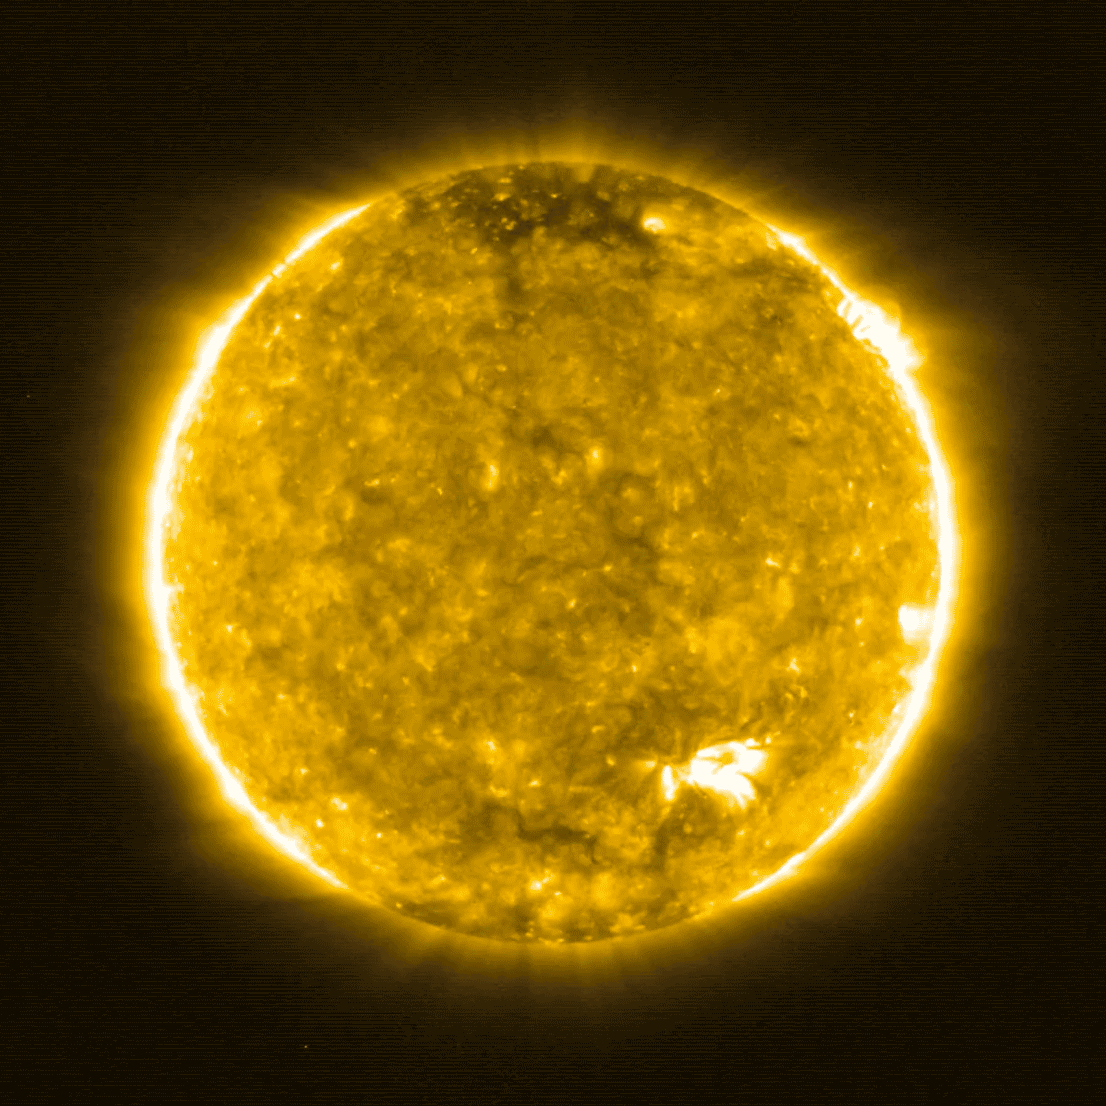 人类史上最近距离太阳照片公布,科学家从中发现了惊人